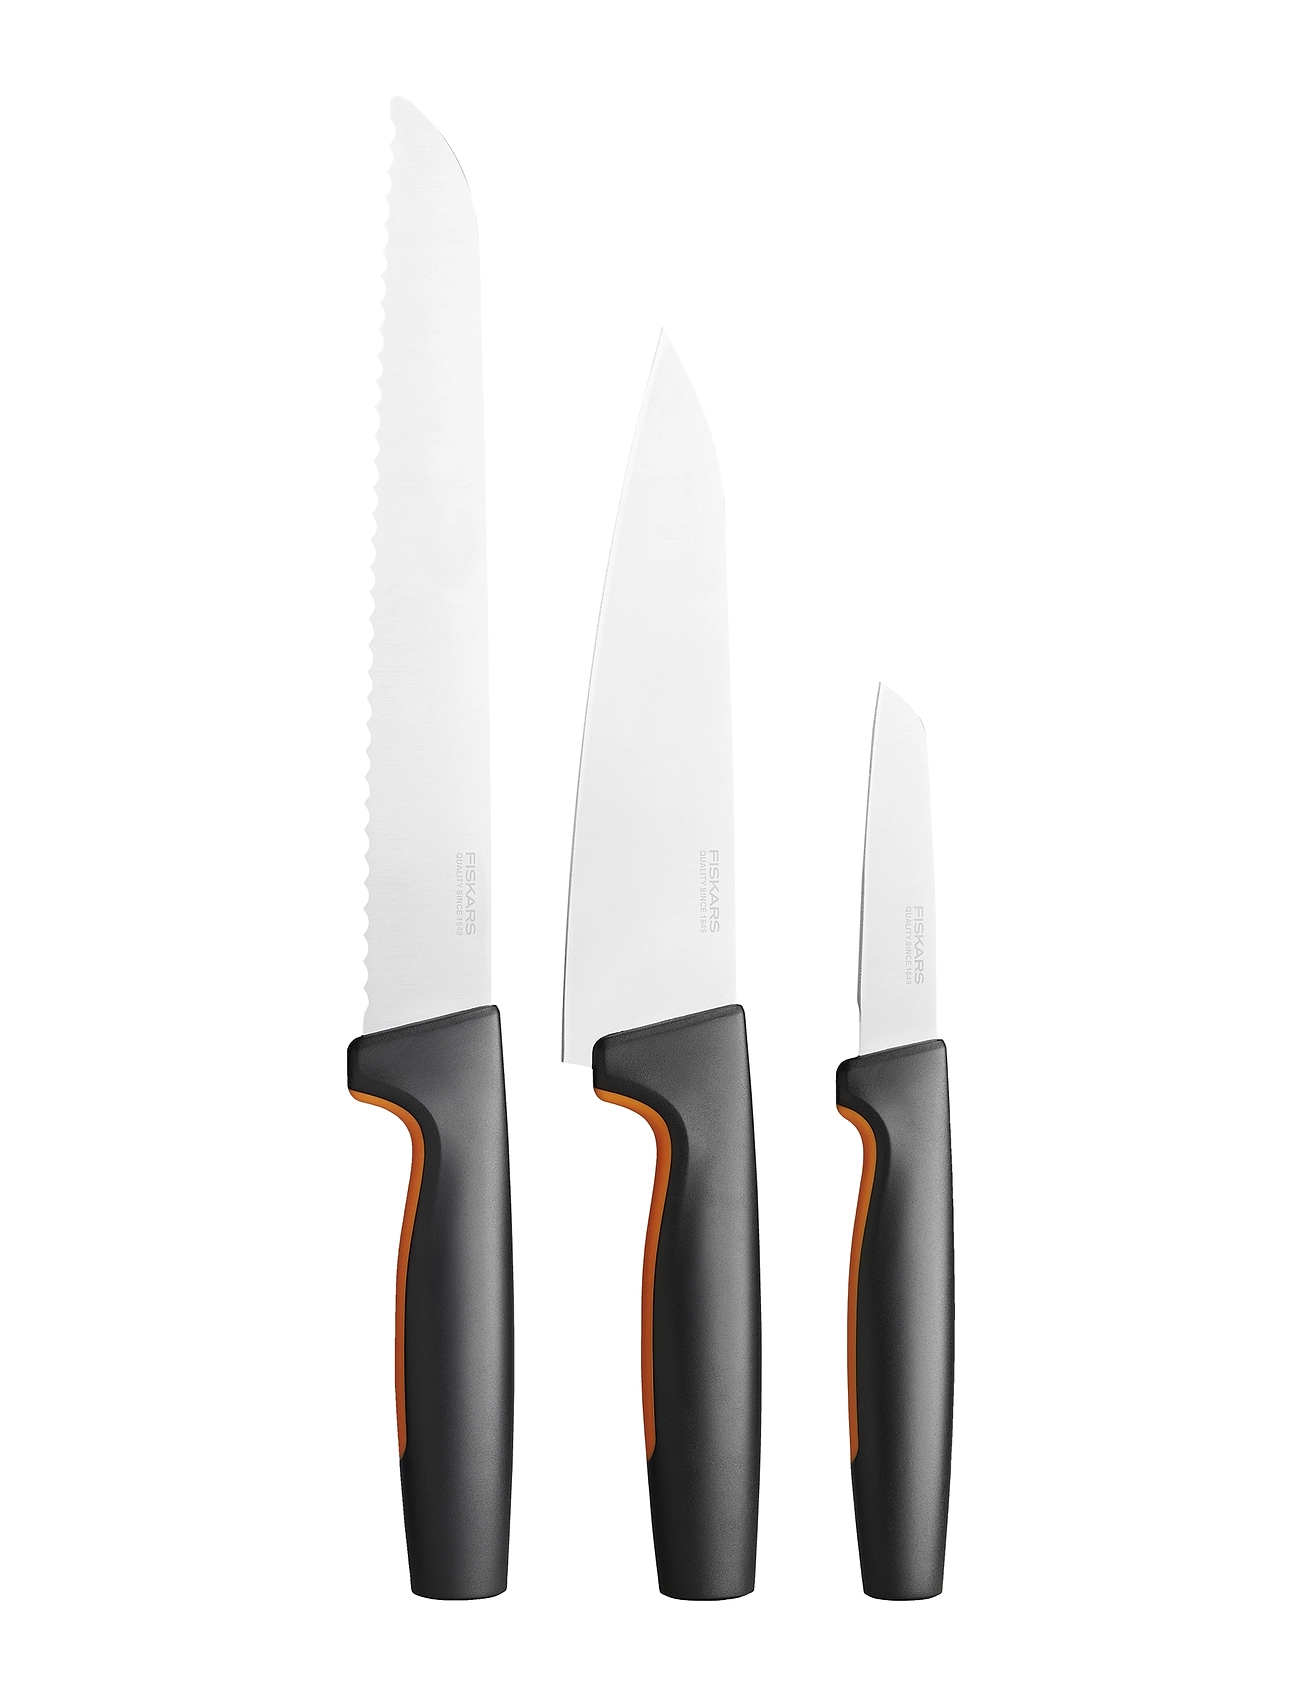 Ff Knife Set, 3 Parts Home Kitchen Knives & Accessories Knife Sets Black Fiskars